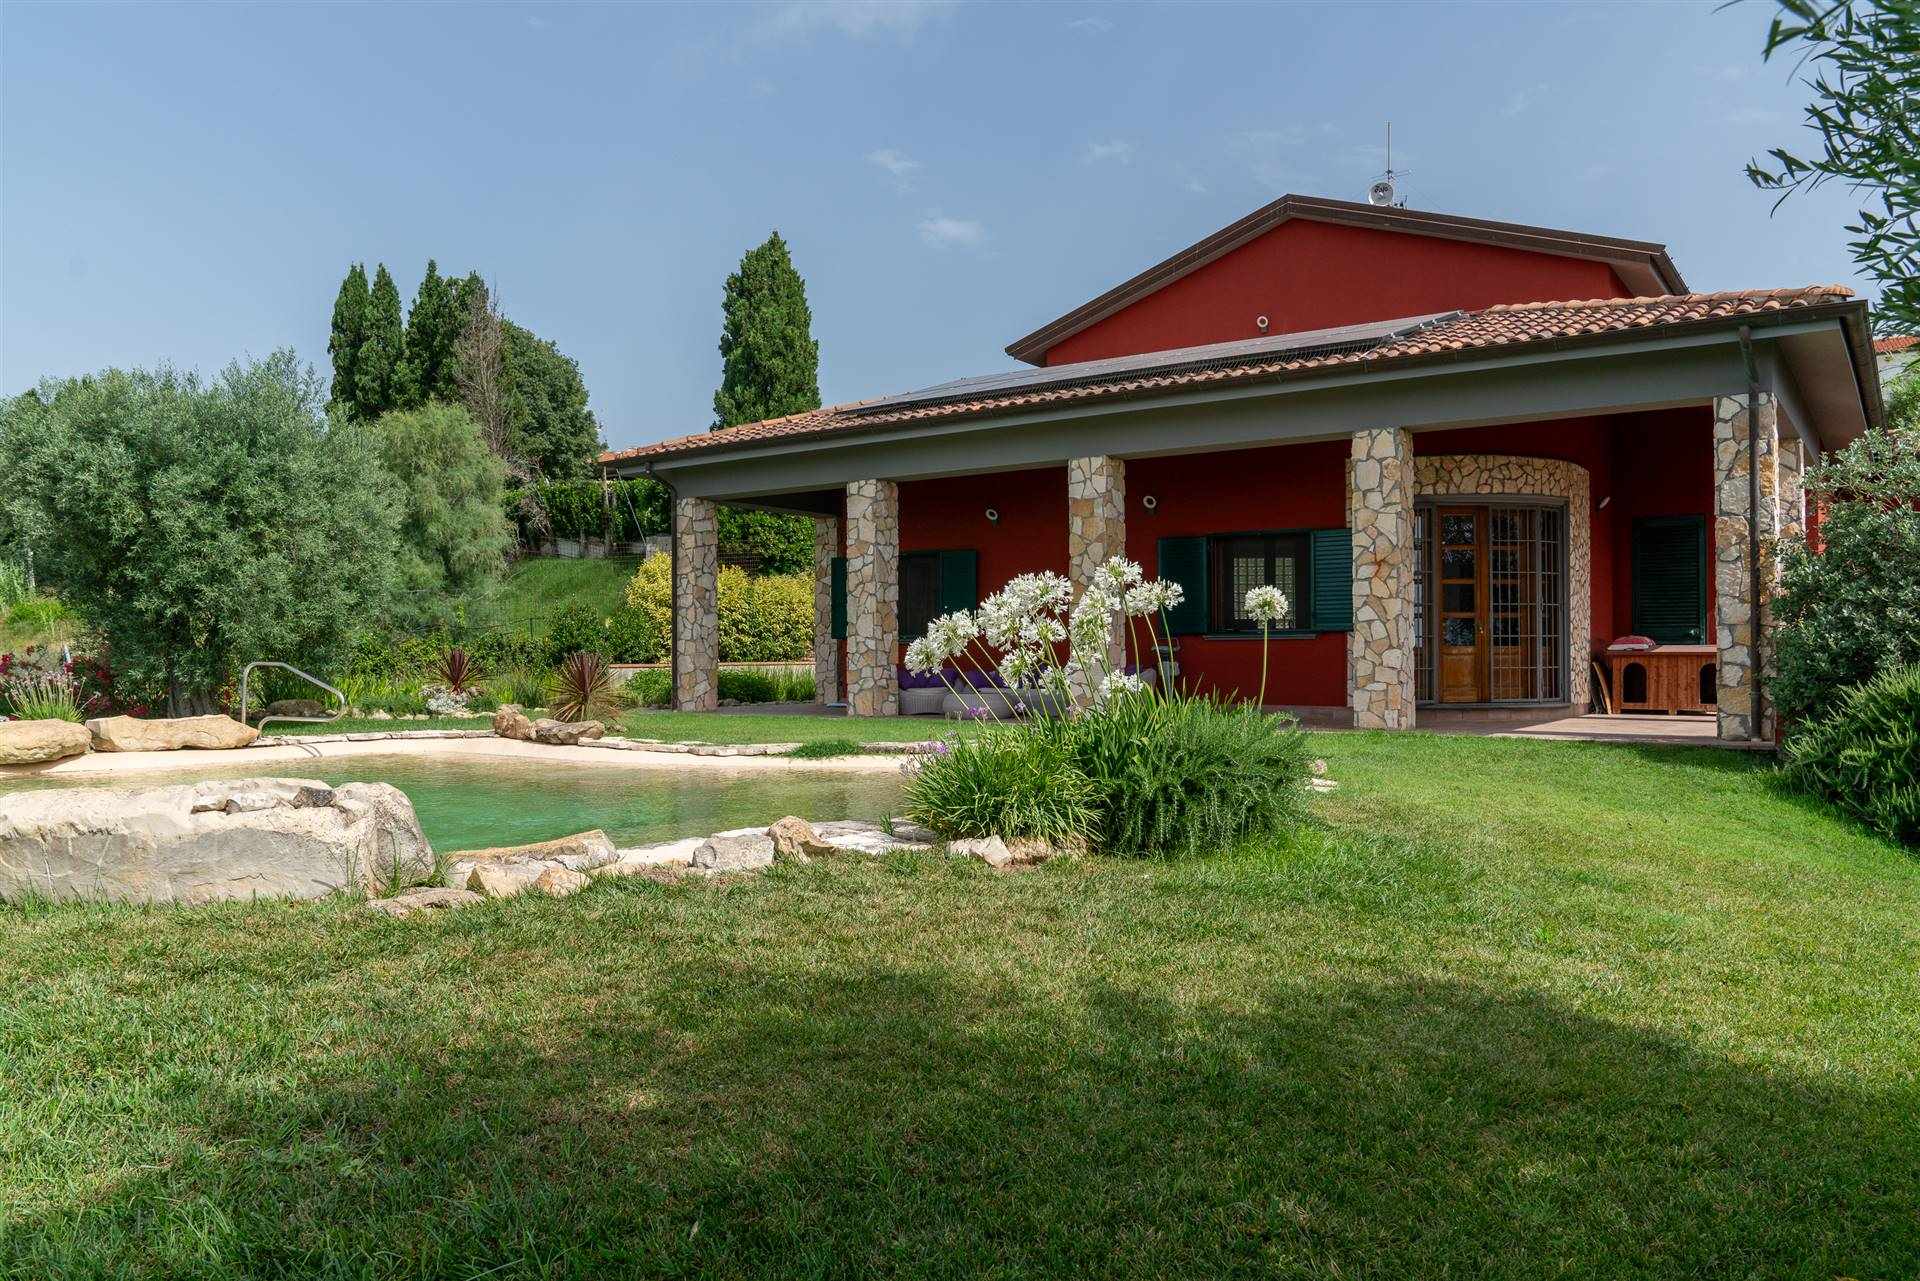 Villa in vendita a Orciano Pisano, 12 locali, prezzo € 880.000 | PortaleAgenzieImmobiliari.it